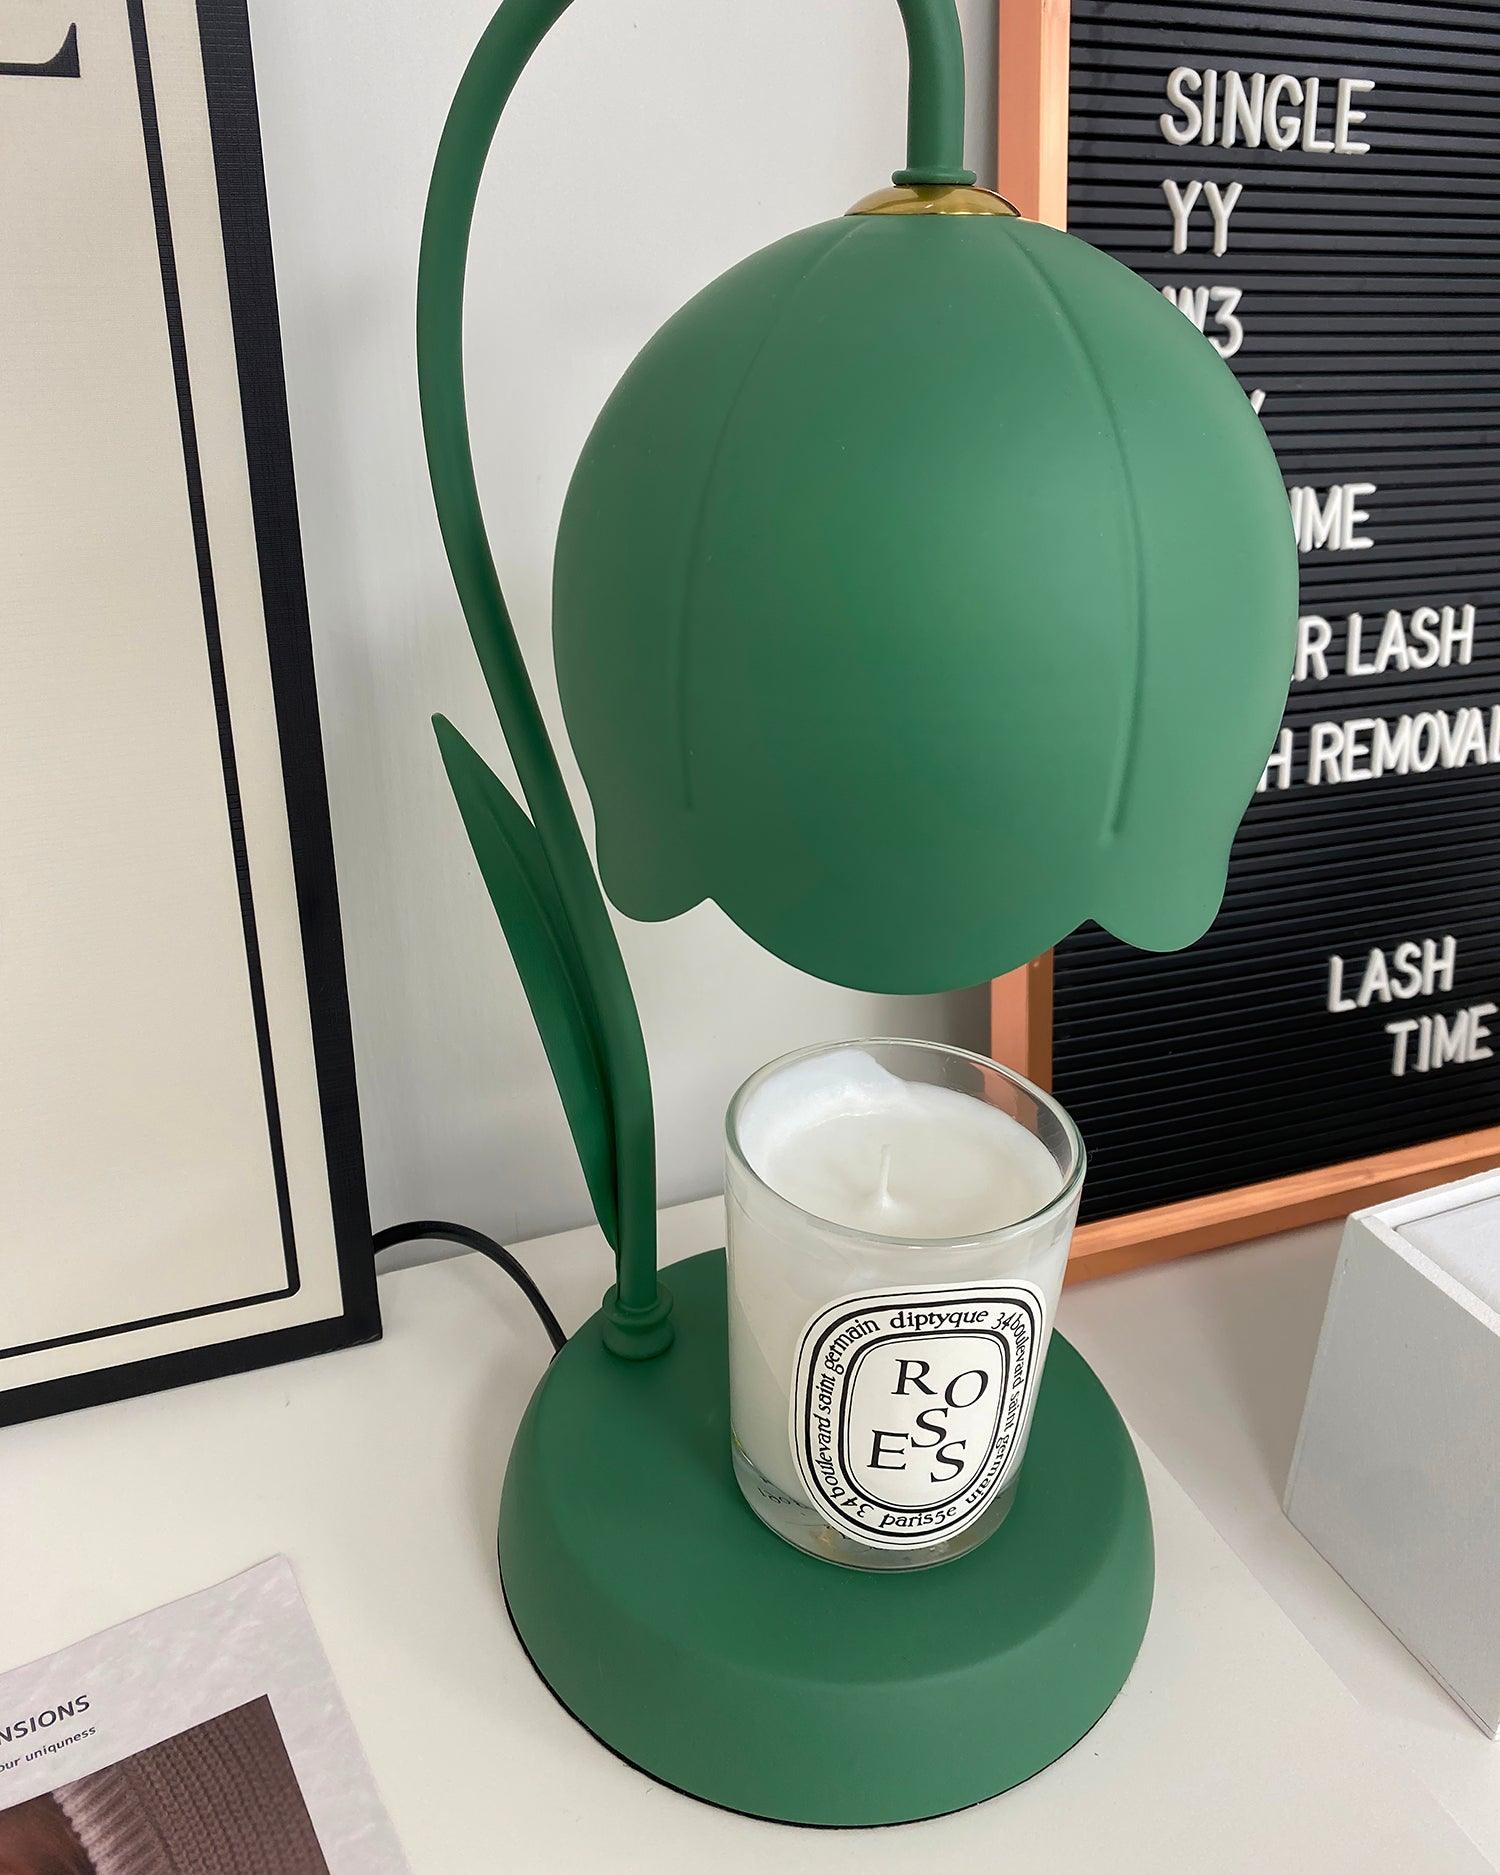 Naina Candle Warmer Lamp 6.3″- 13.7″ - Docos